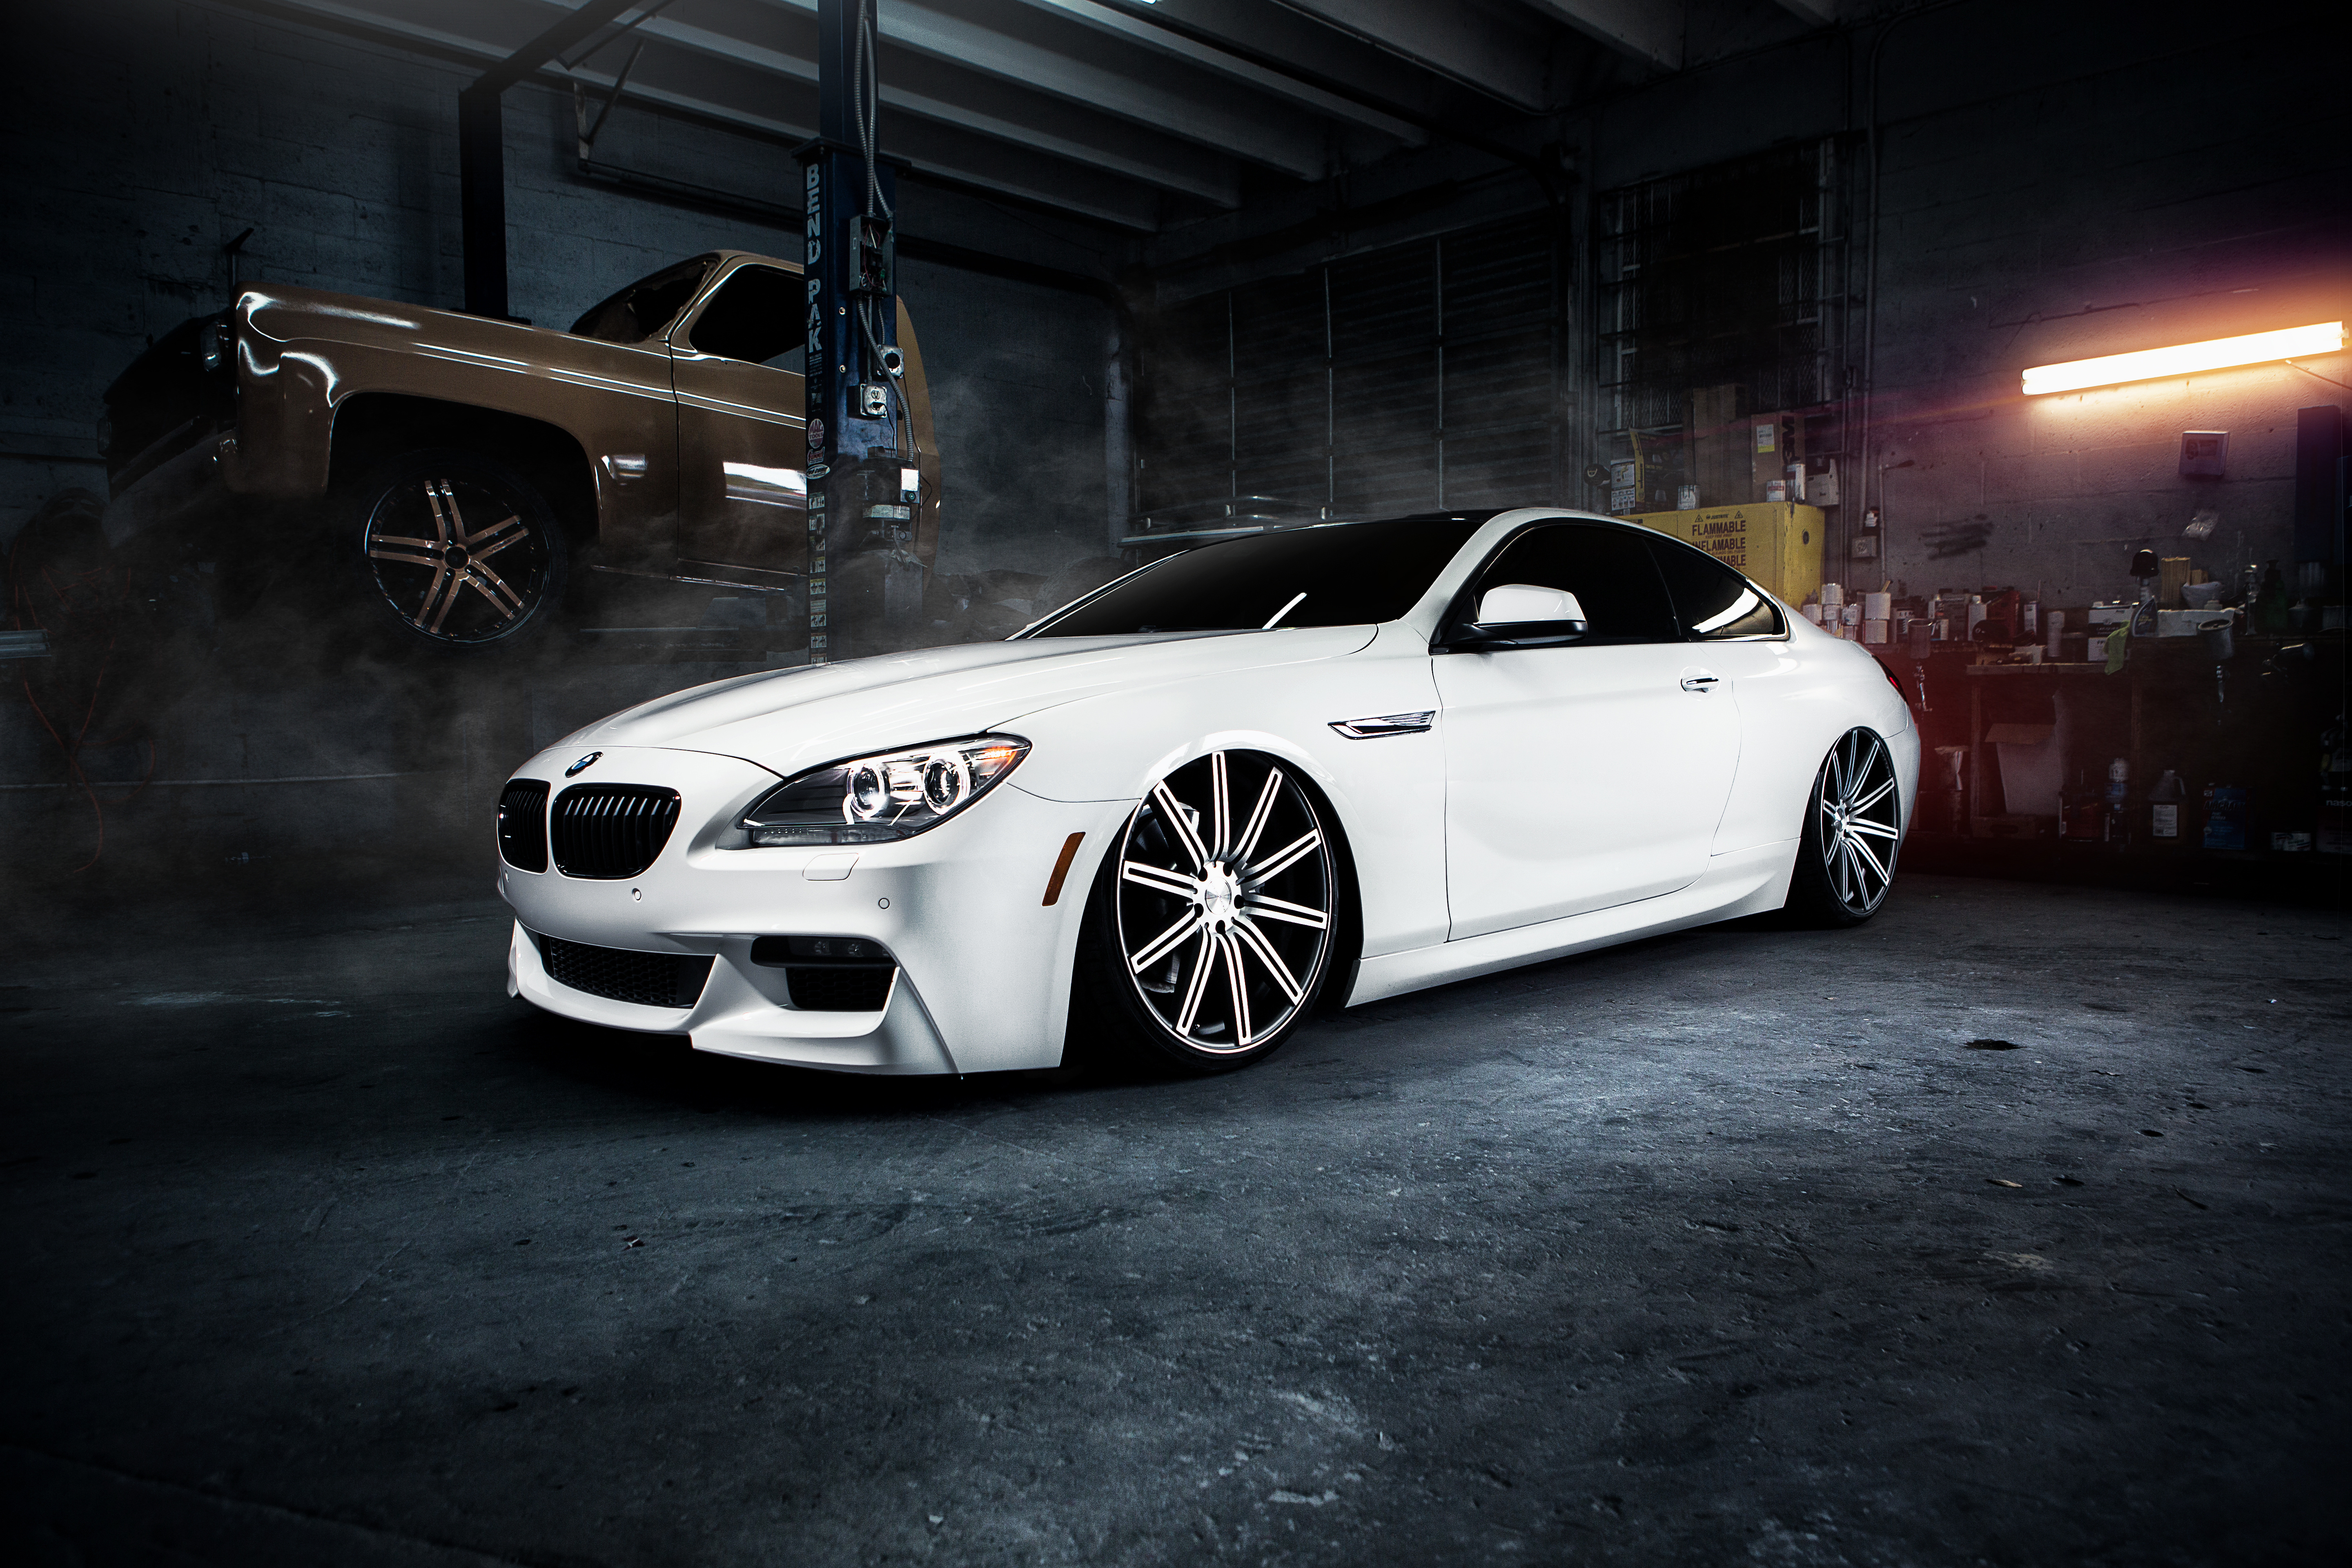 Image: BMW, m6, white, low profile, landing, garage, workshop